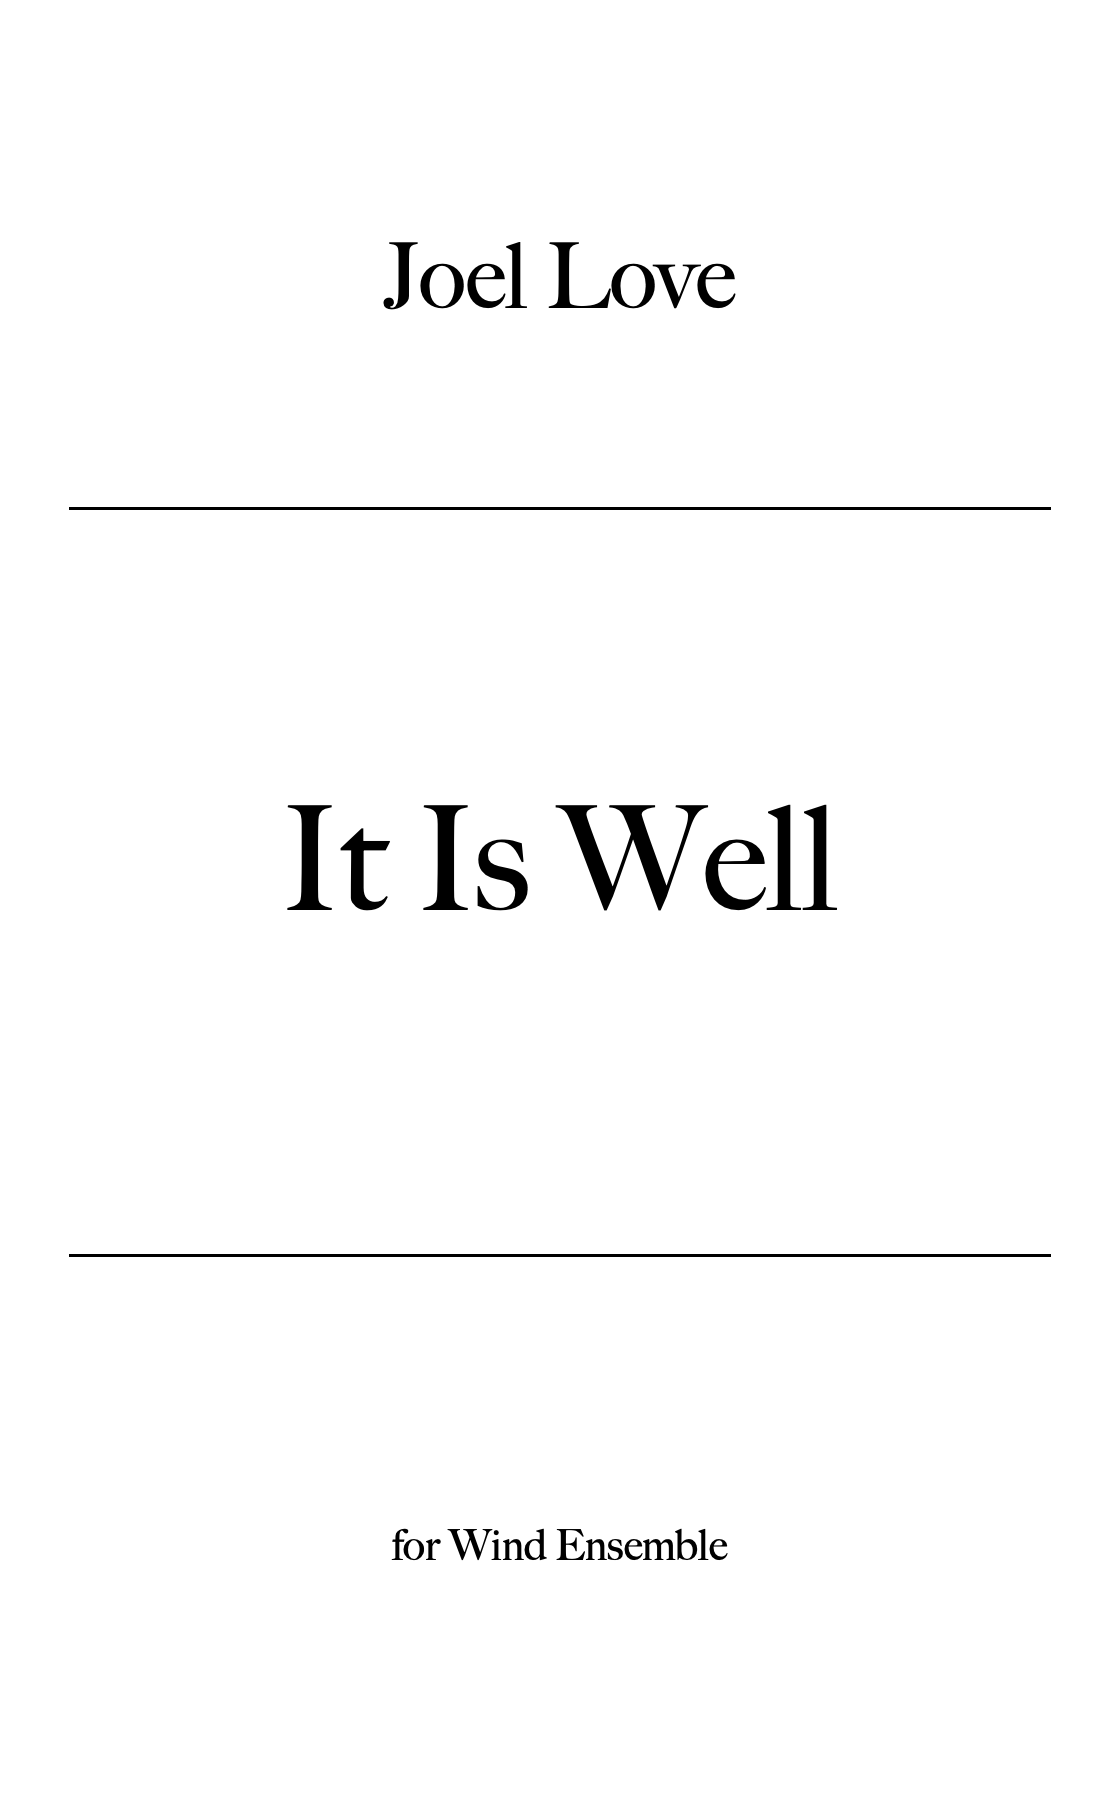 It Is Well (Score Only) by Joel Love